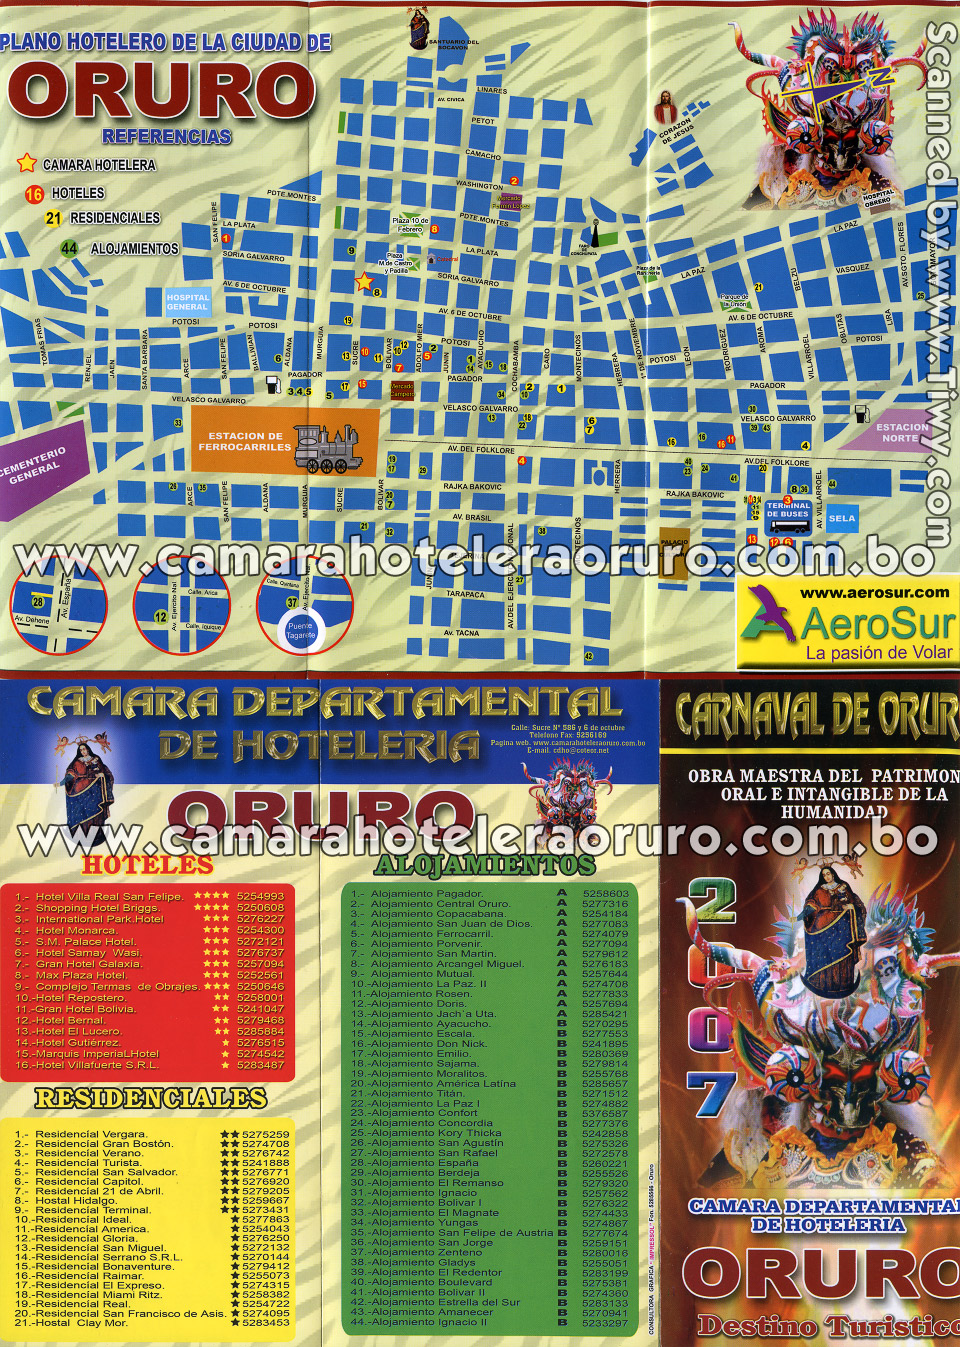 Plano hotelero de la ciudad de Oruro